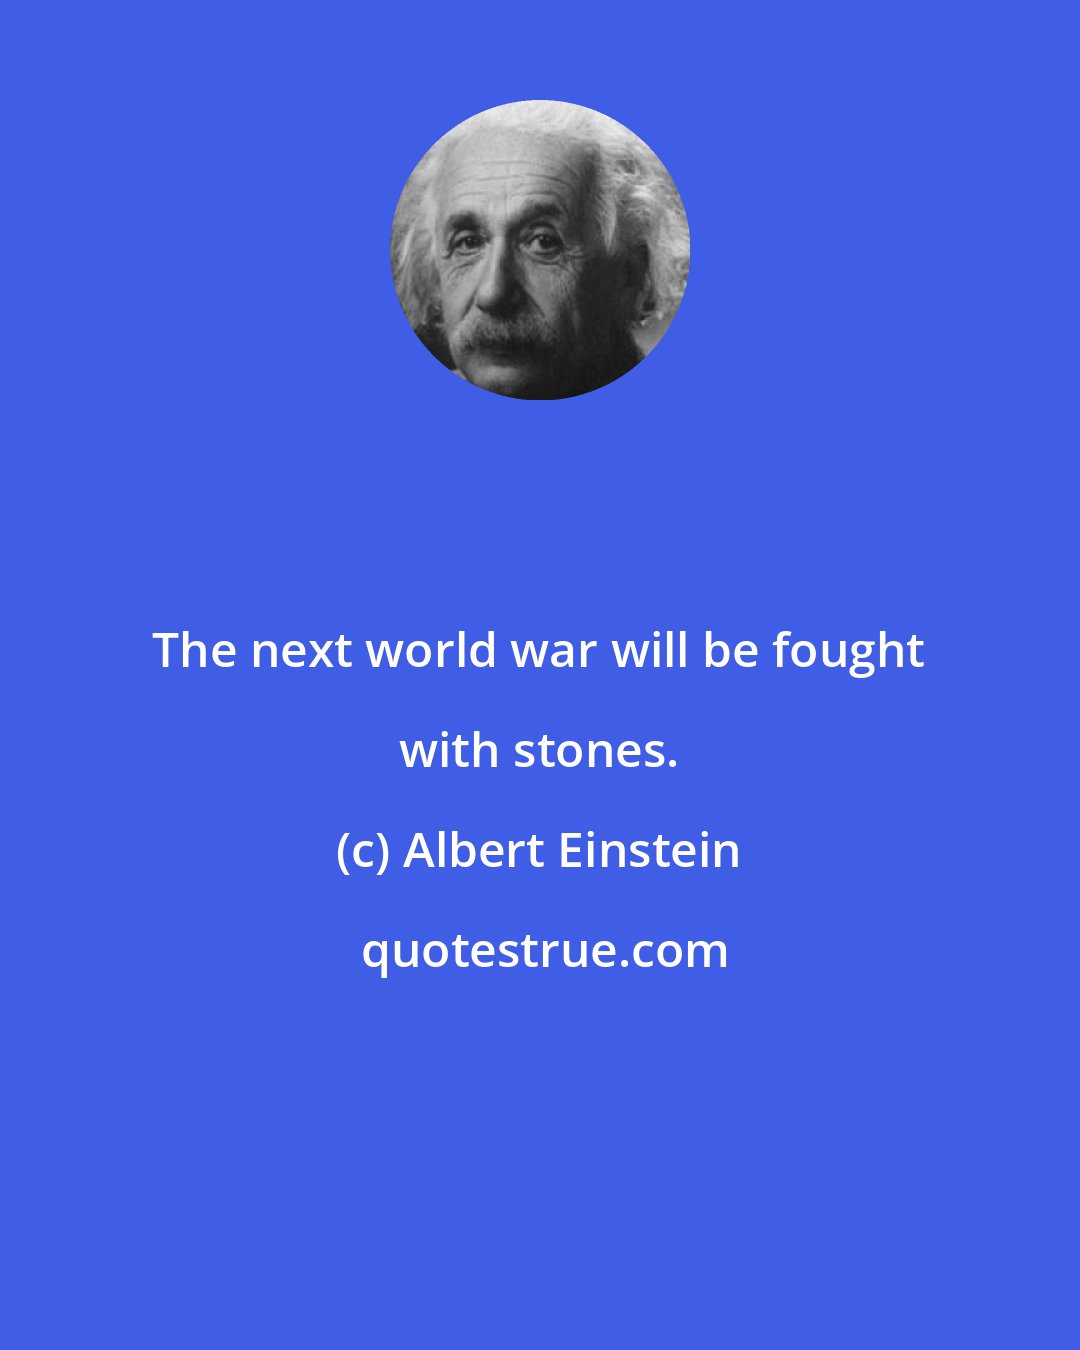 Albert Einstein: The next world war will be fought with stones.